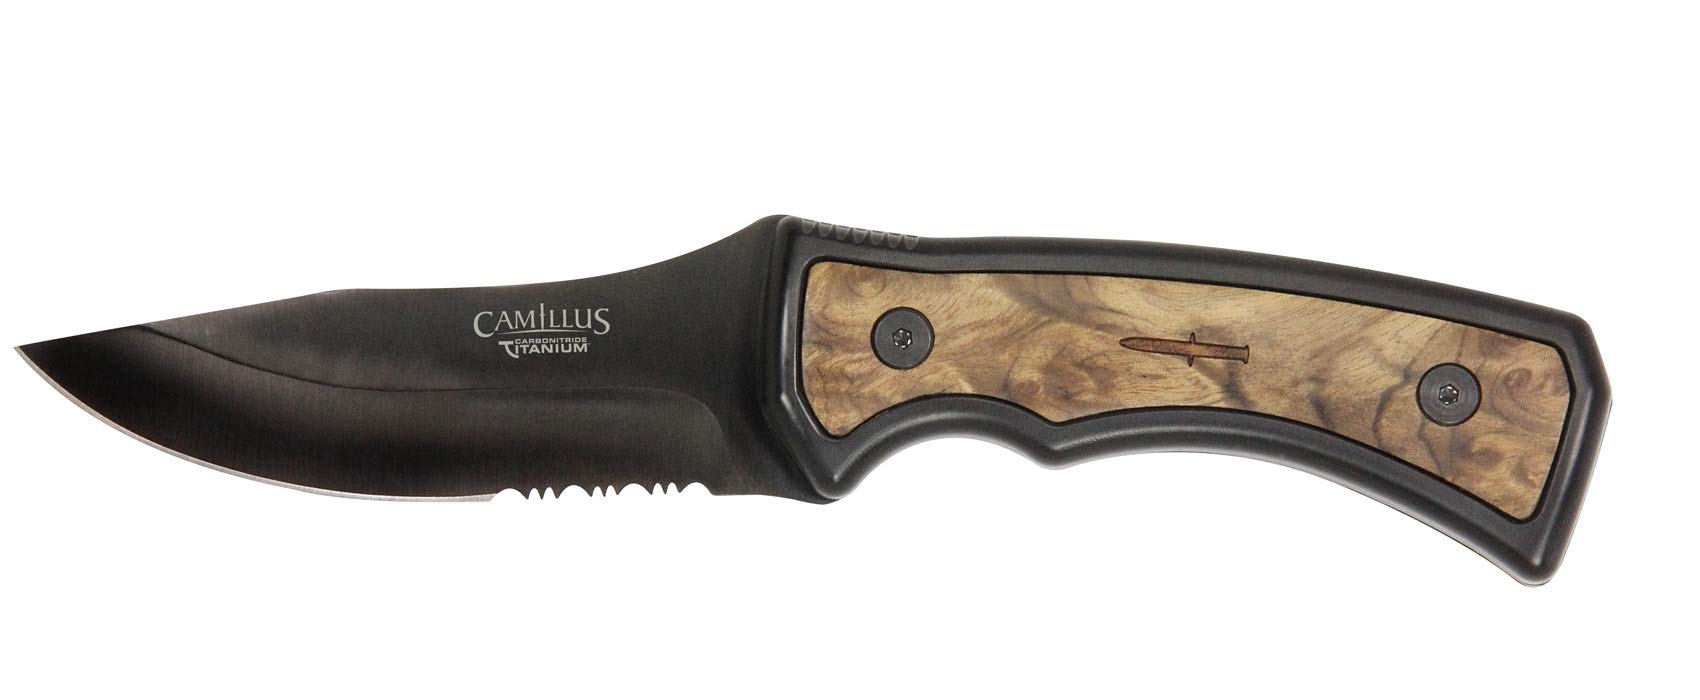 Camillus Mountaineer Messer, inklusive ballistischer Nylonscheide, 10,5 cm Carbonitride Titanium AUS-8 Stahlklinge, Wurzelholz/TPE Griff, schwarz, 23 cm